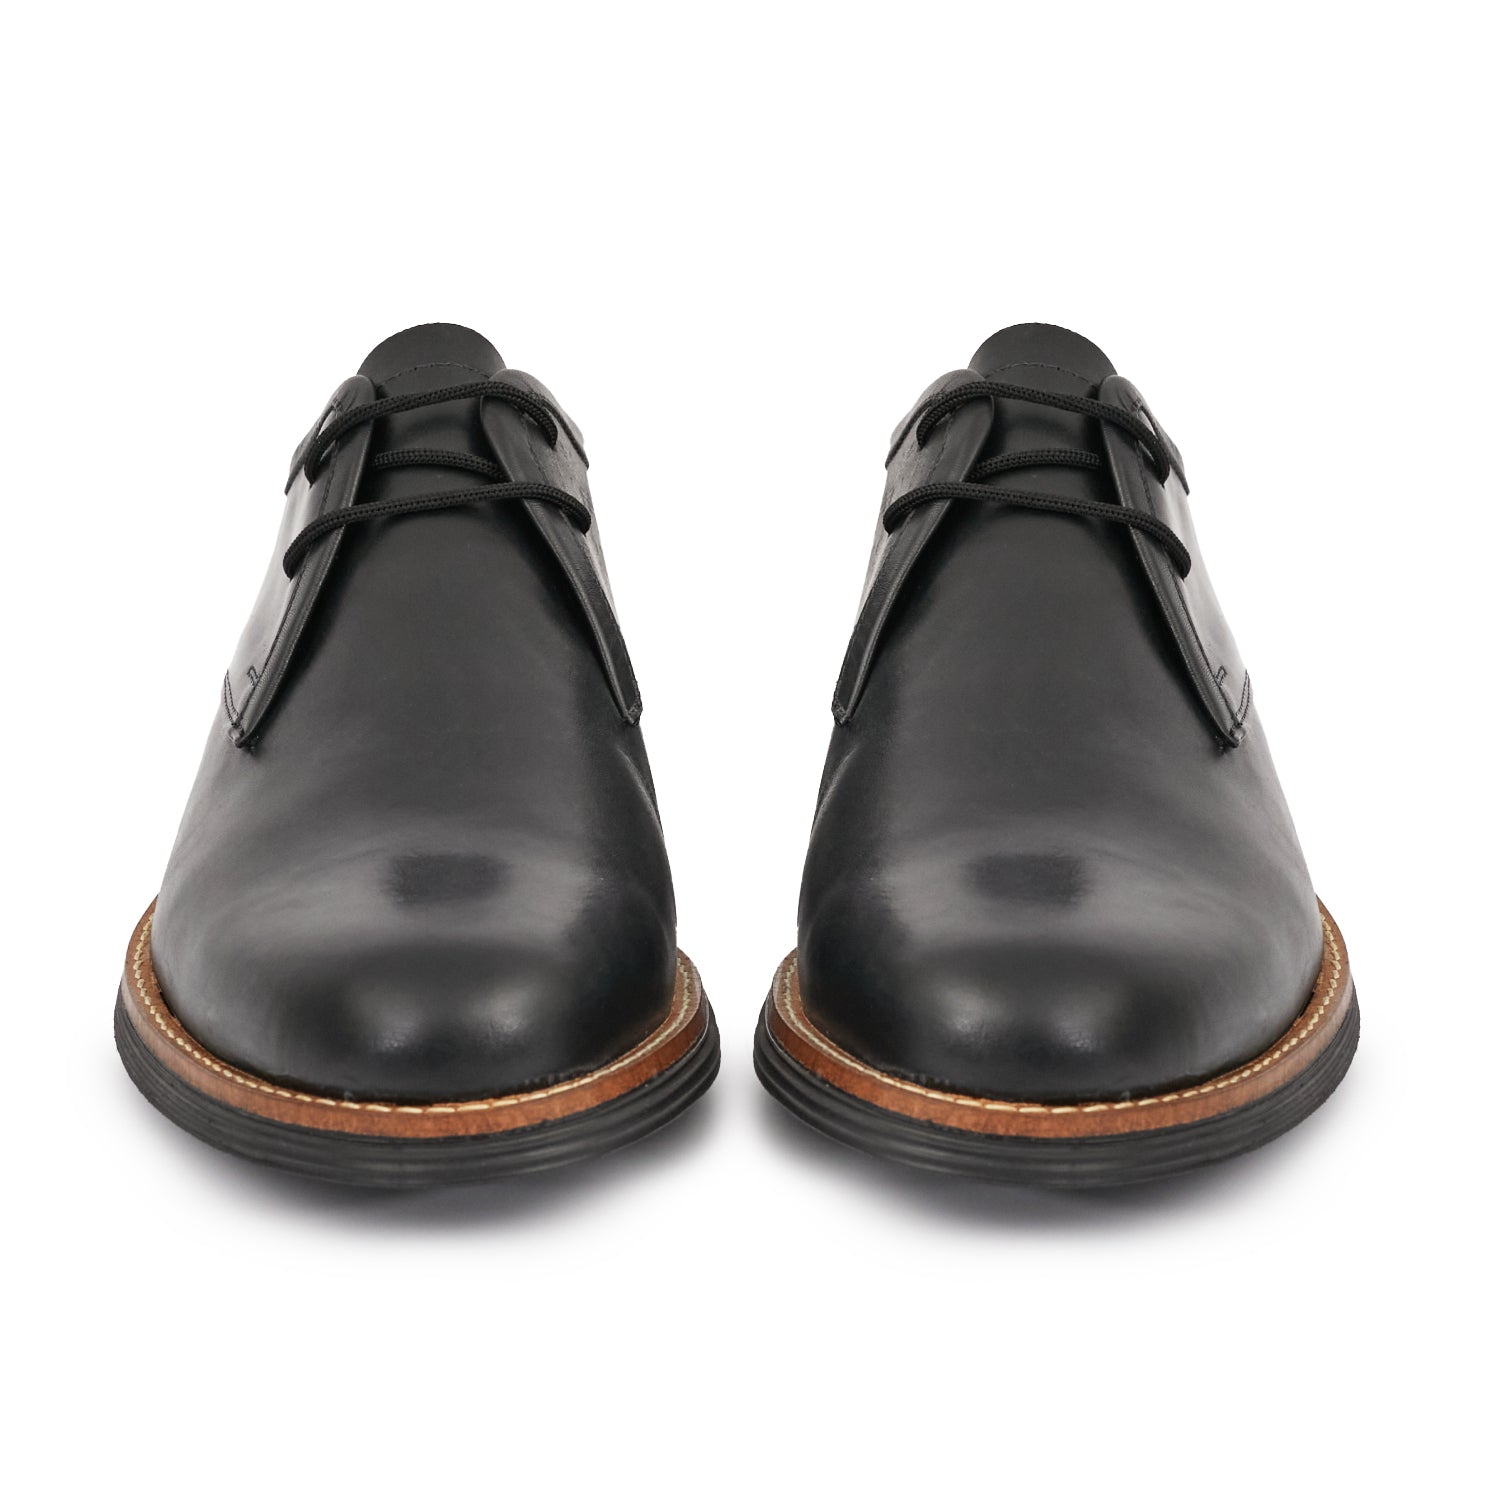 Zapato Berl - BRIGANTI  Zapatos hombre, Zapatos negros de vestir